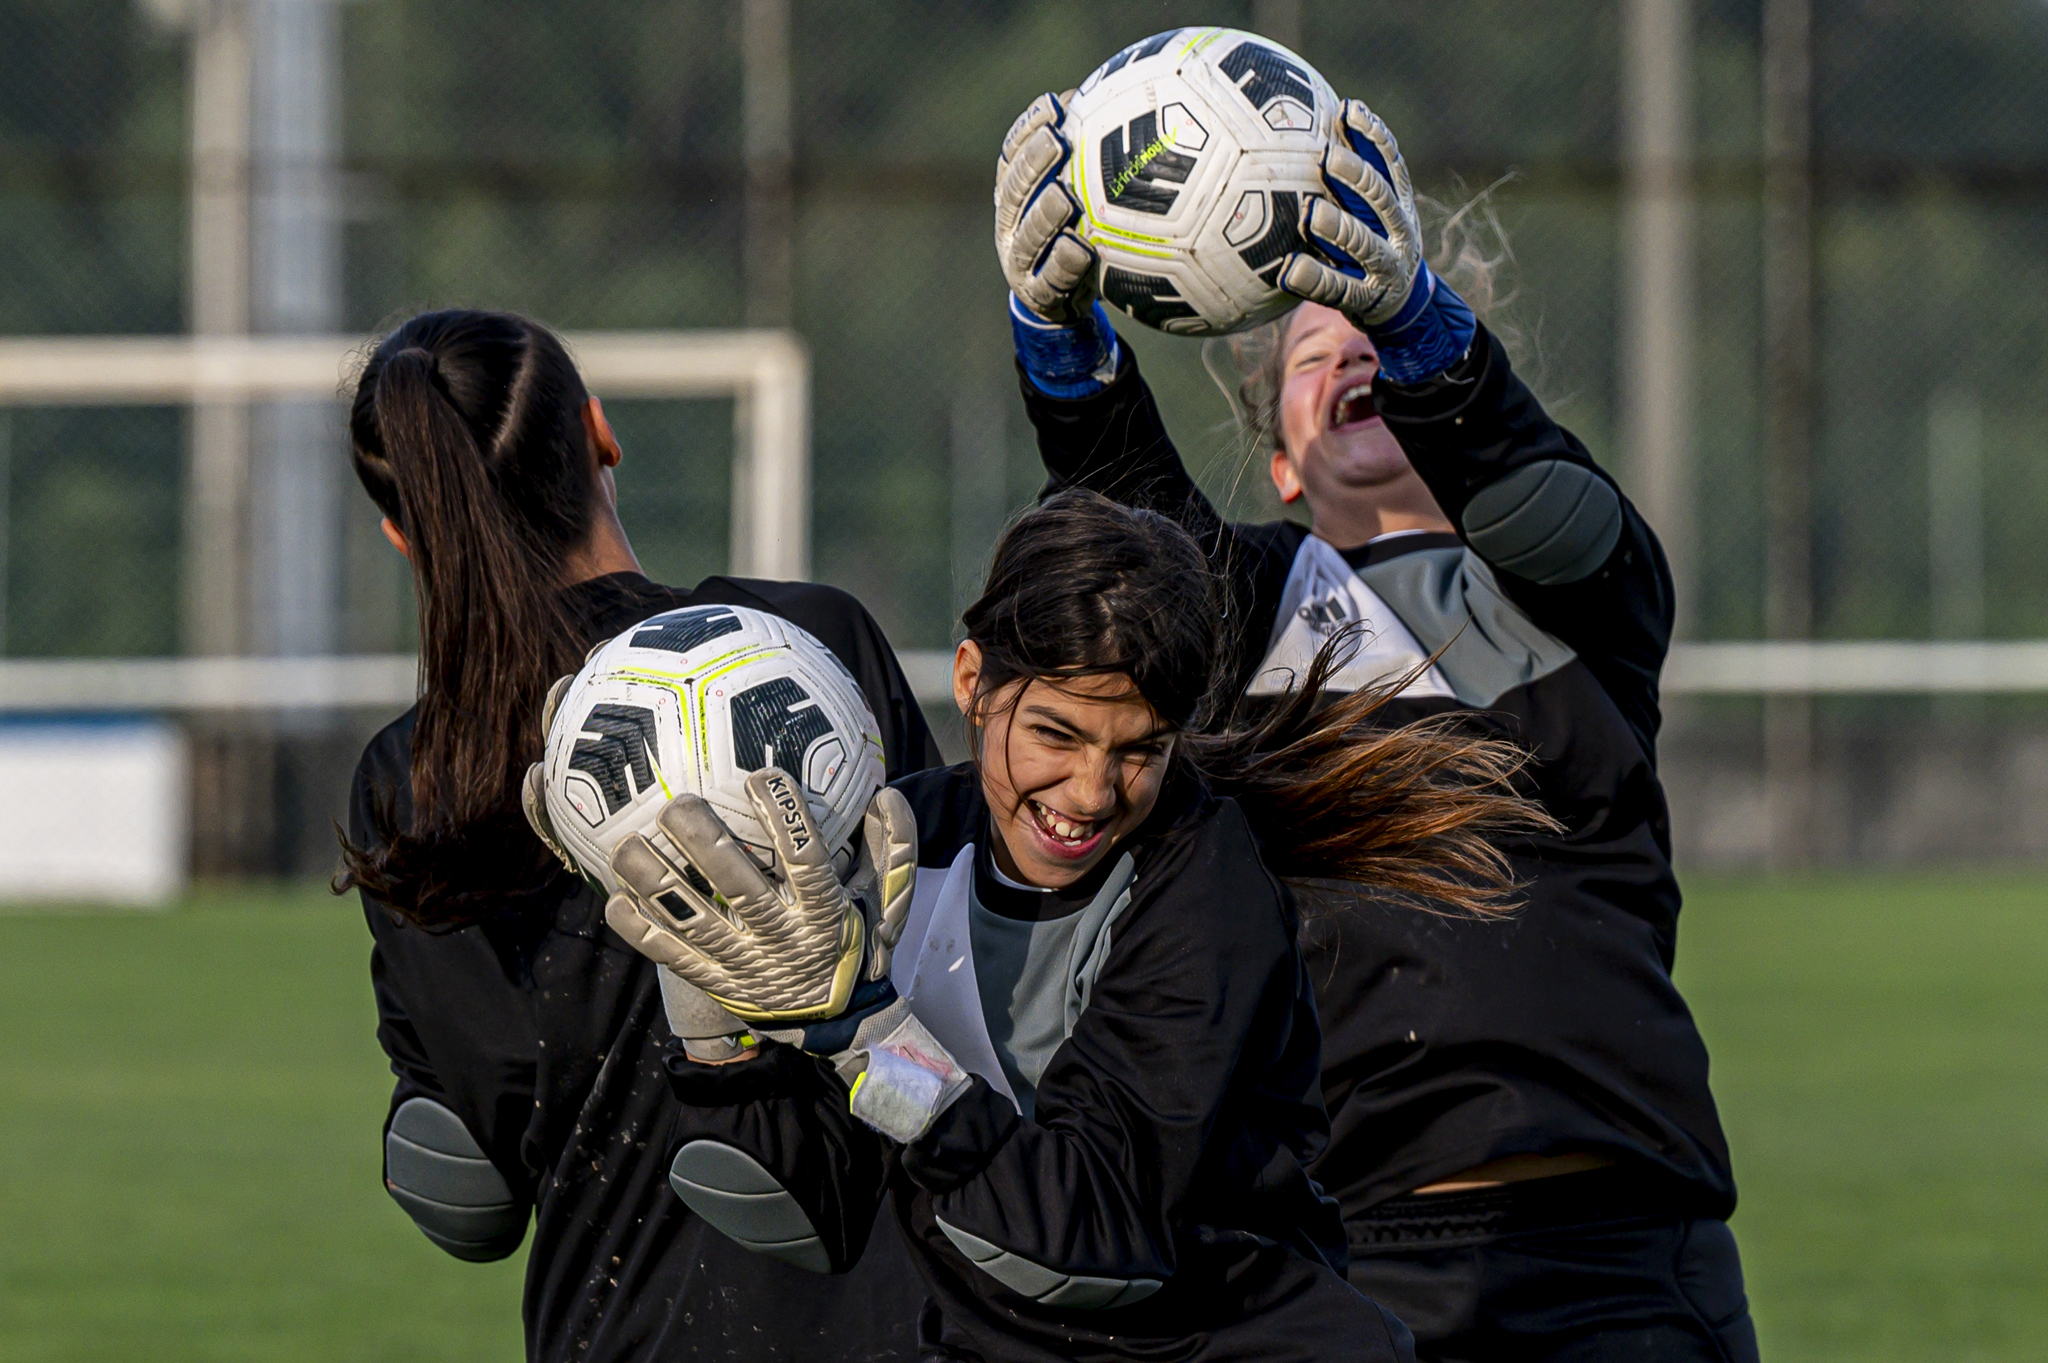 CFD Futebol Feminino UEFA Academy: convocatória SUB-13